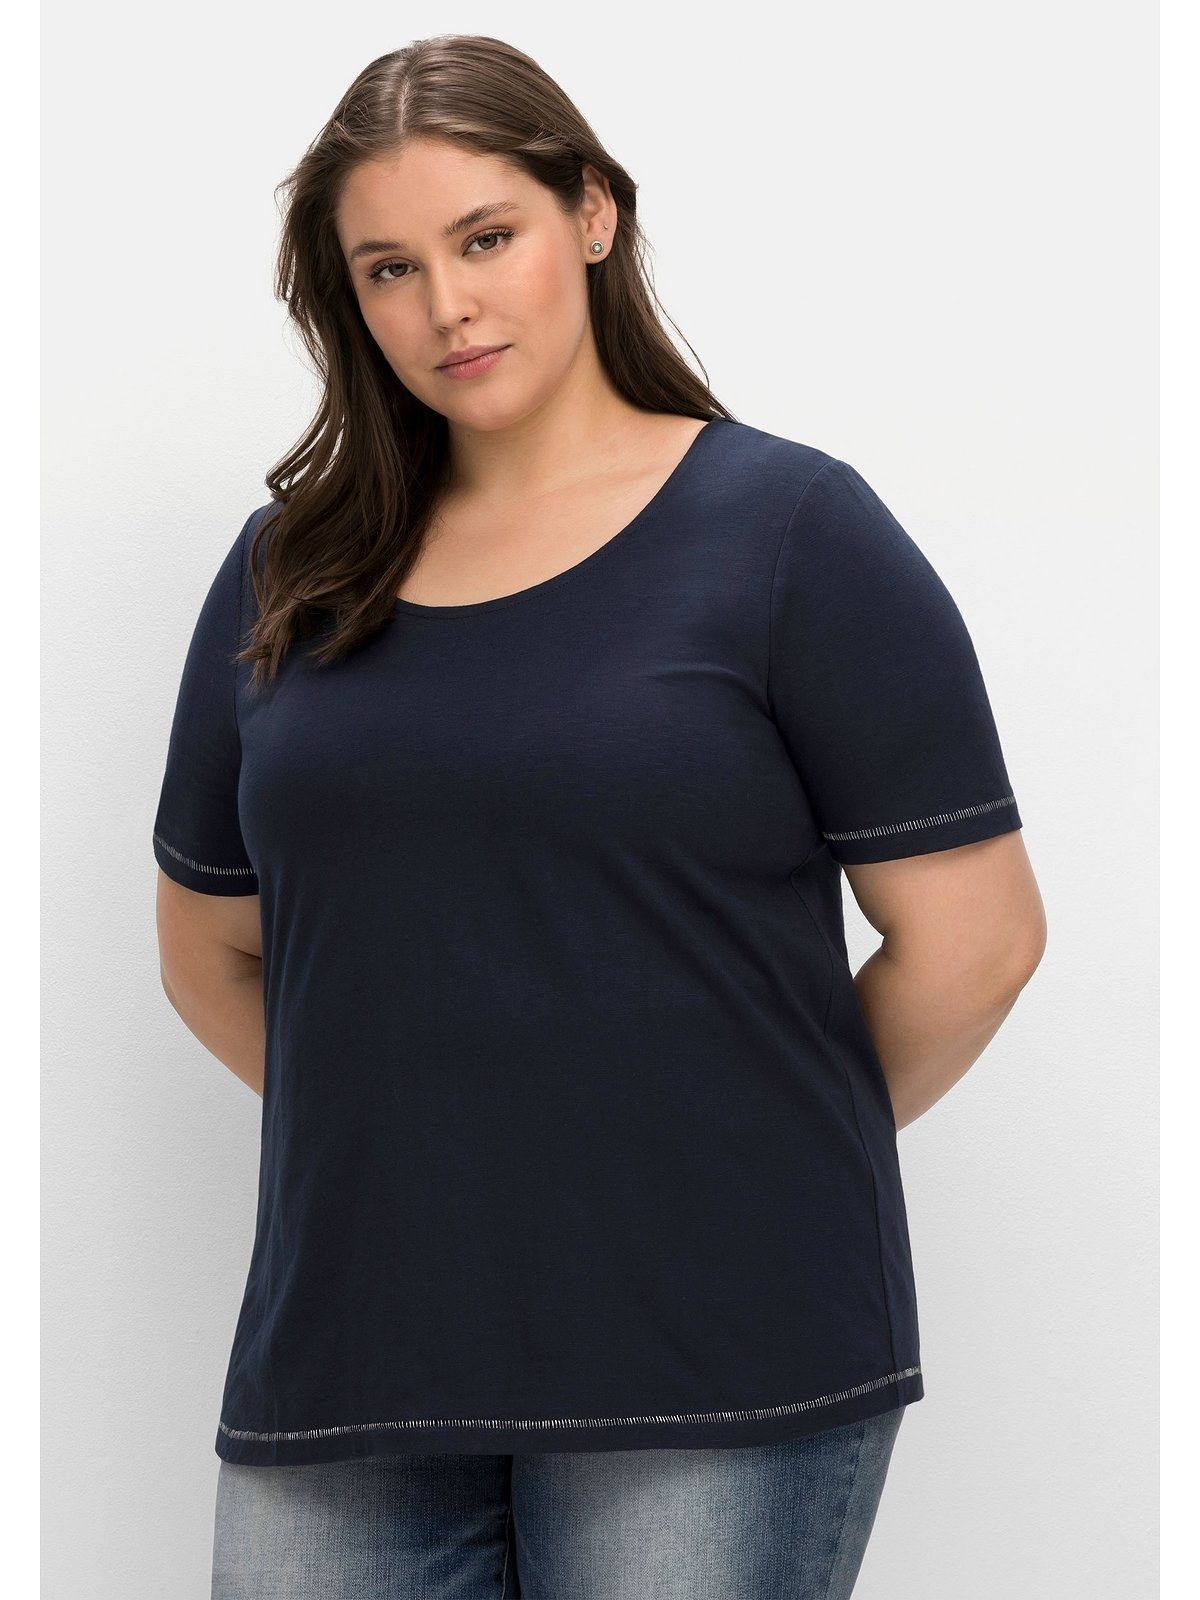 Sheego T-Shirt hinten Schulter Große auf Größen der nachtblau Print mit